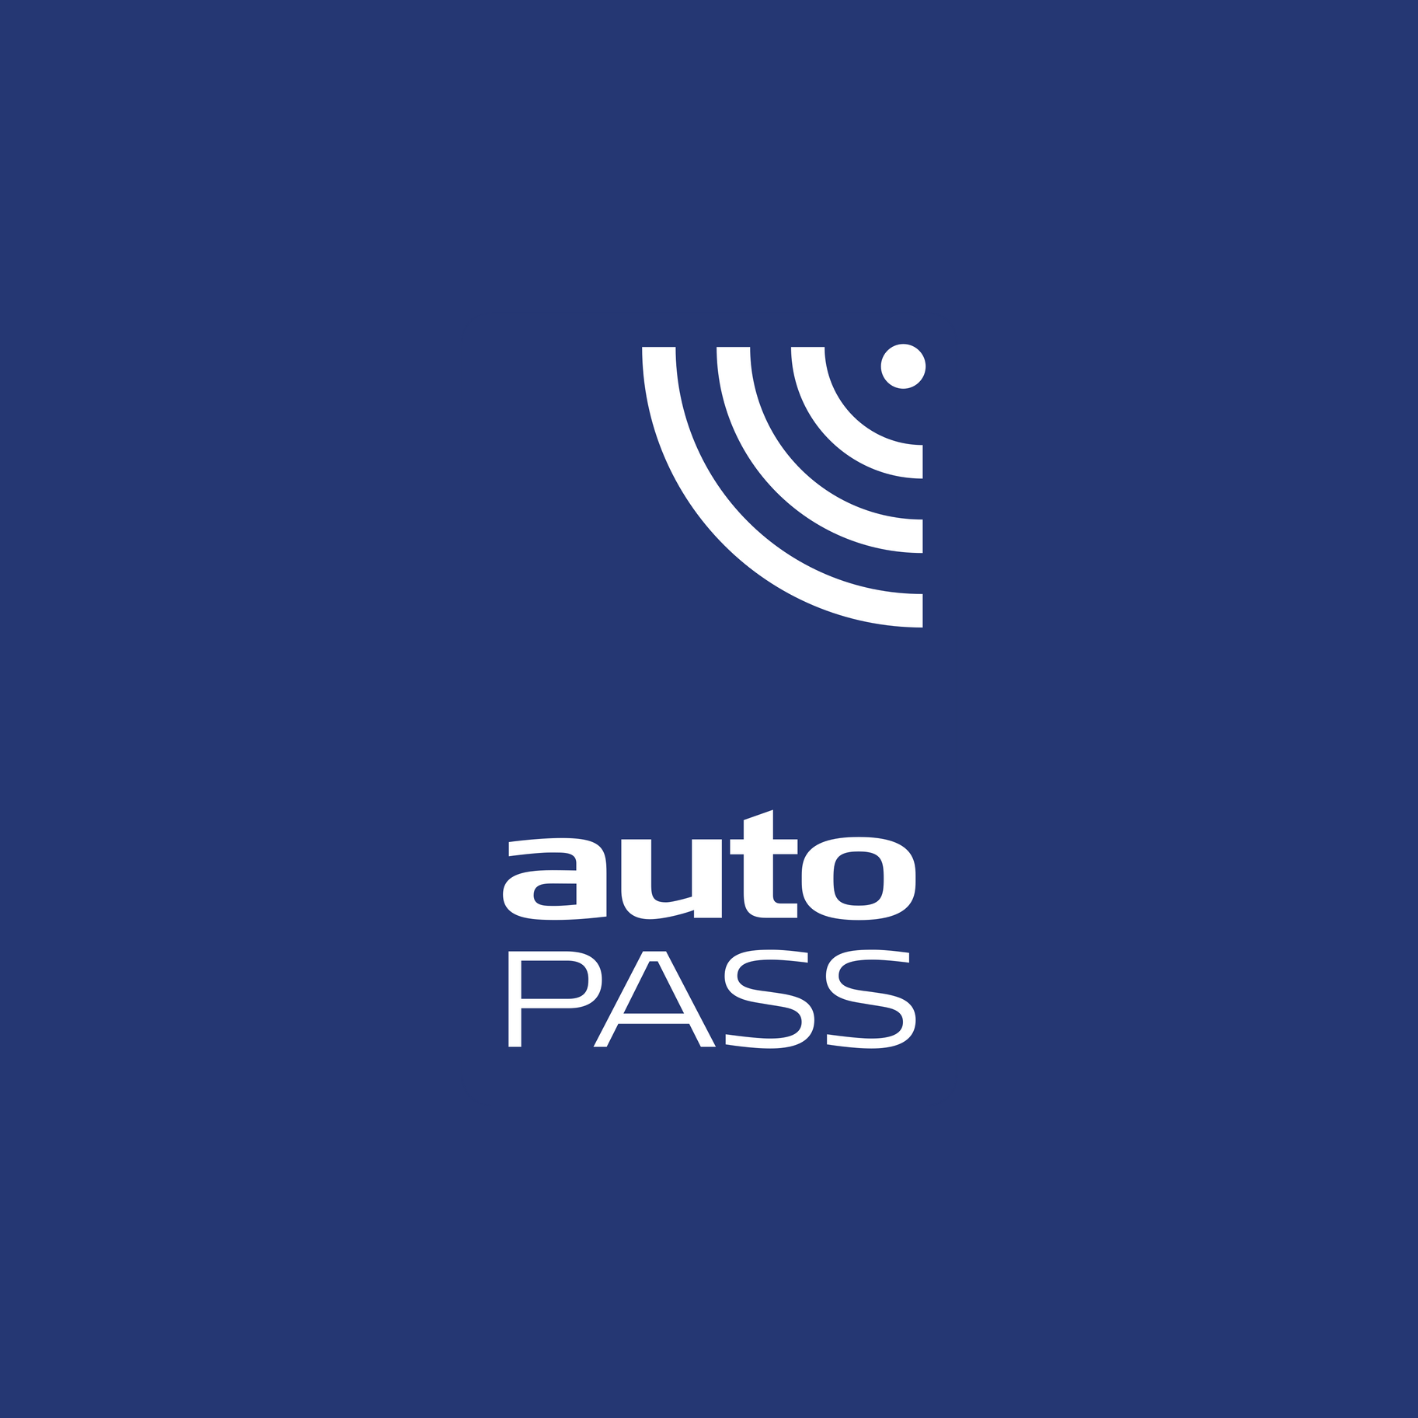 Auto-pass-logo-1